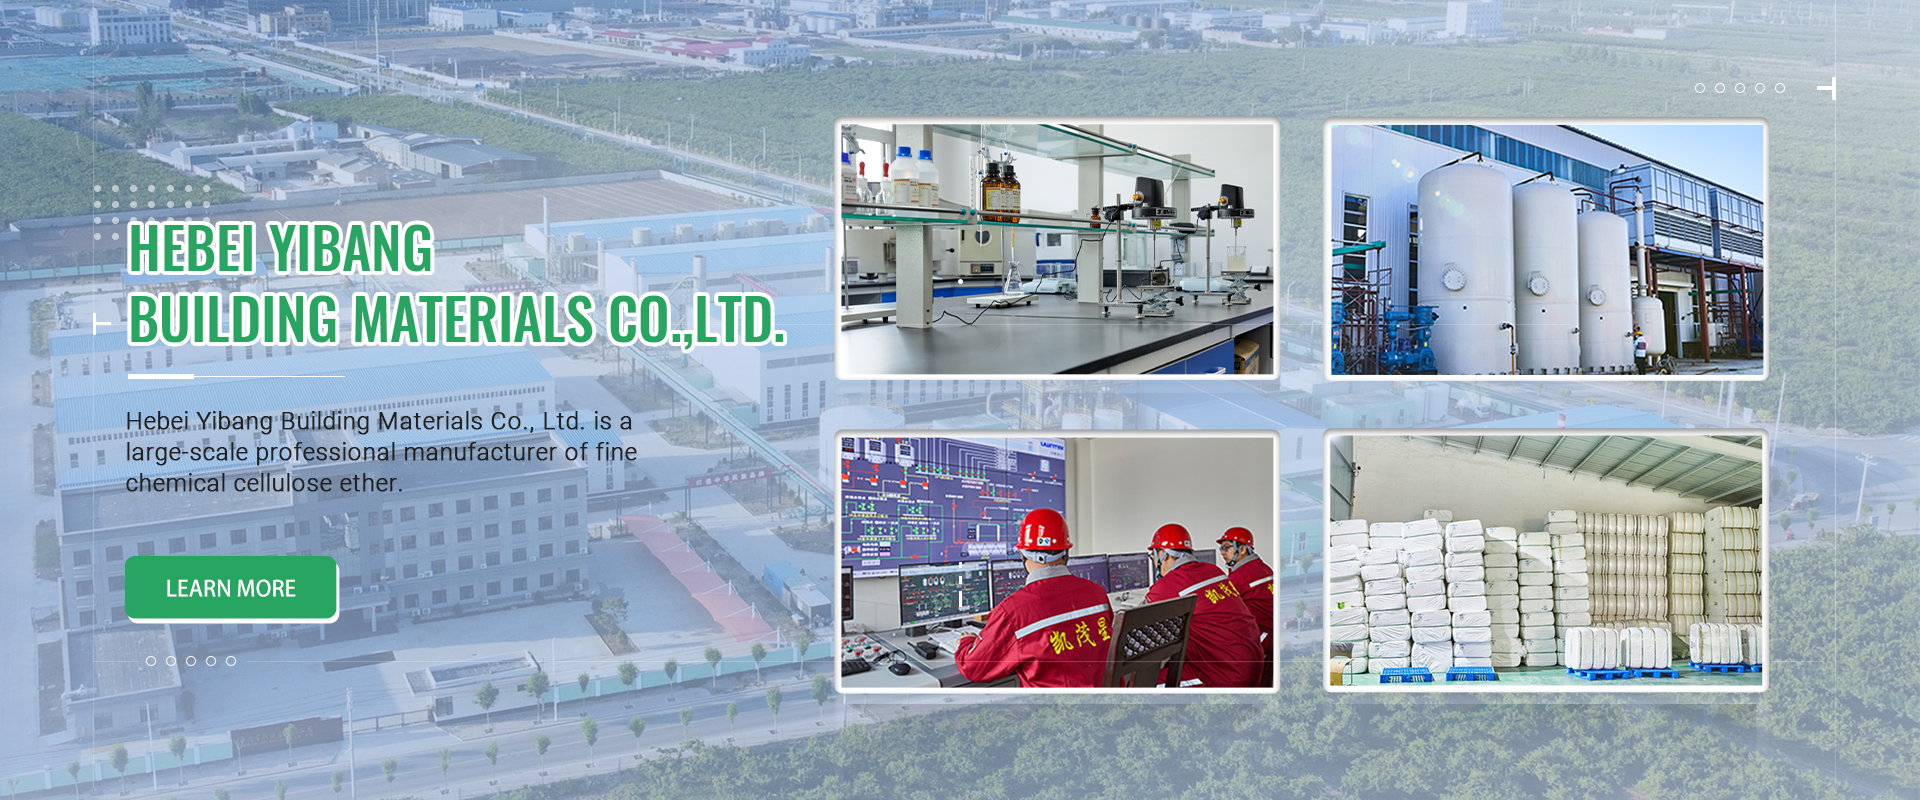 Per què la cel·lulosa Yibang pot convertir-se en la fàbrica d'exportació de cel·lulosa més gran a Hebei, Xina